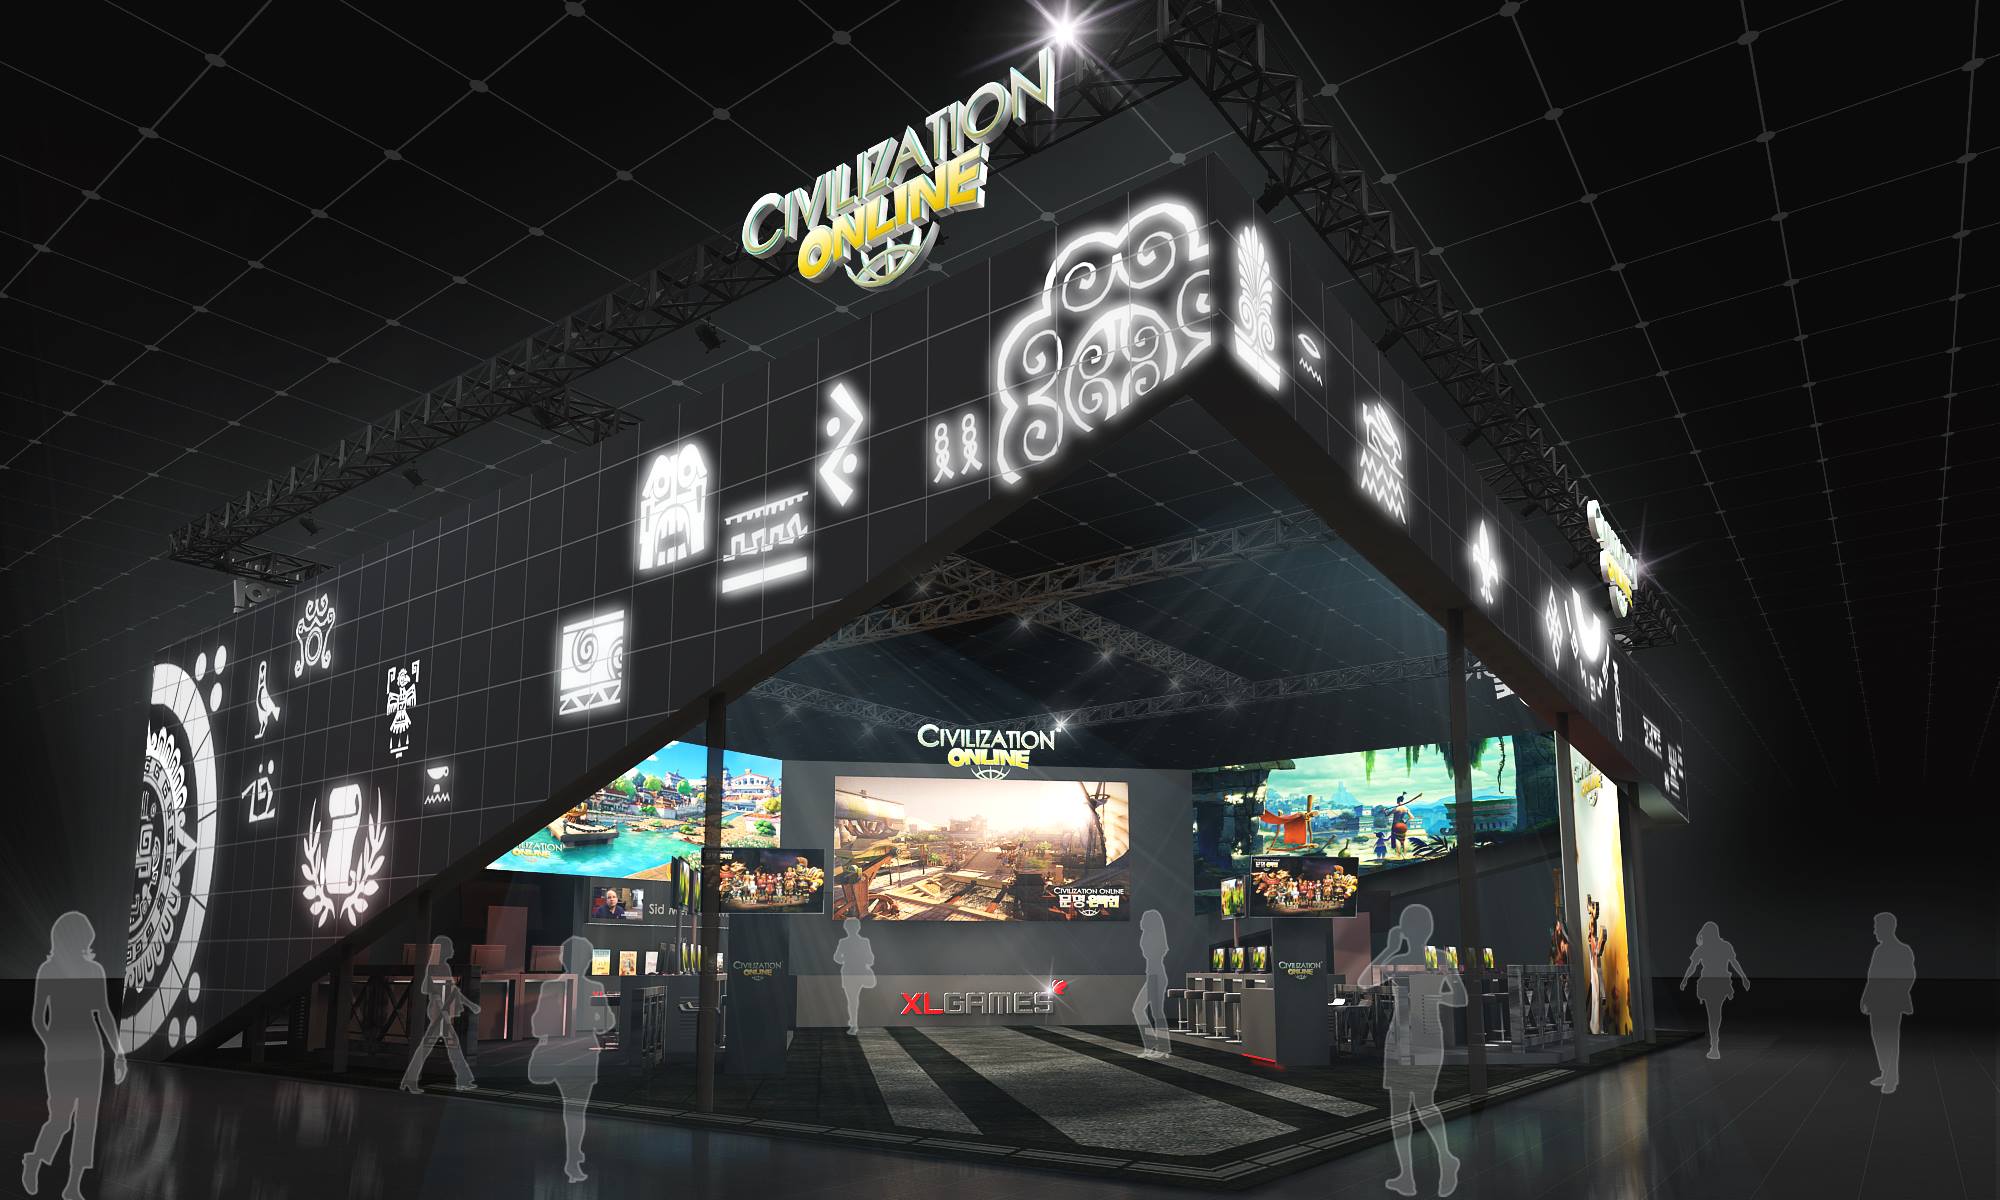 Civilization-Online-G-Star-2014-booth-design